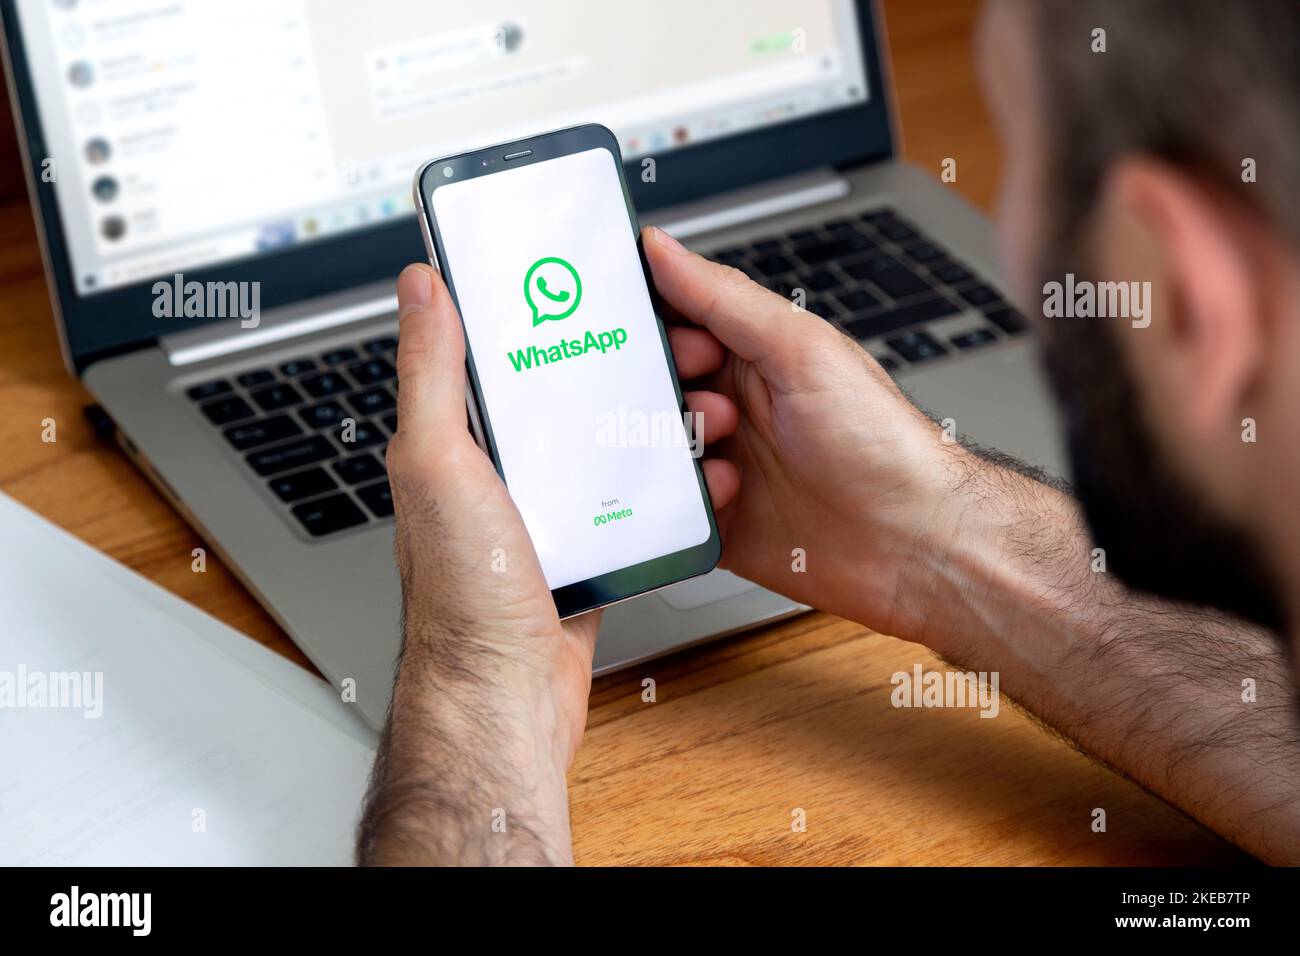 Logo de l'application WhatsApp sur l'écran du téléphone entre les mains d'un homme. Smartphone avec écran blanc et logo vert. Banque D'Images